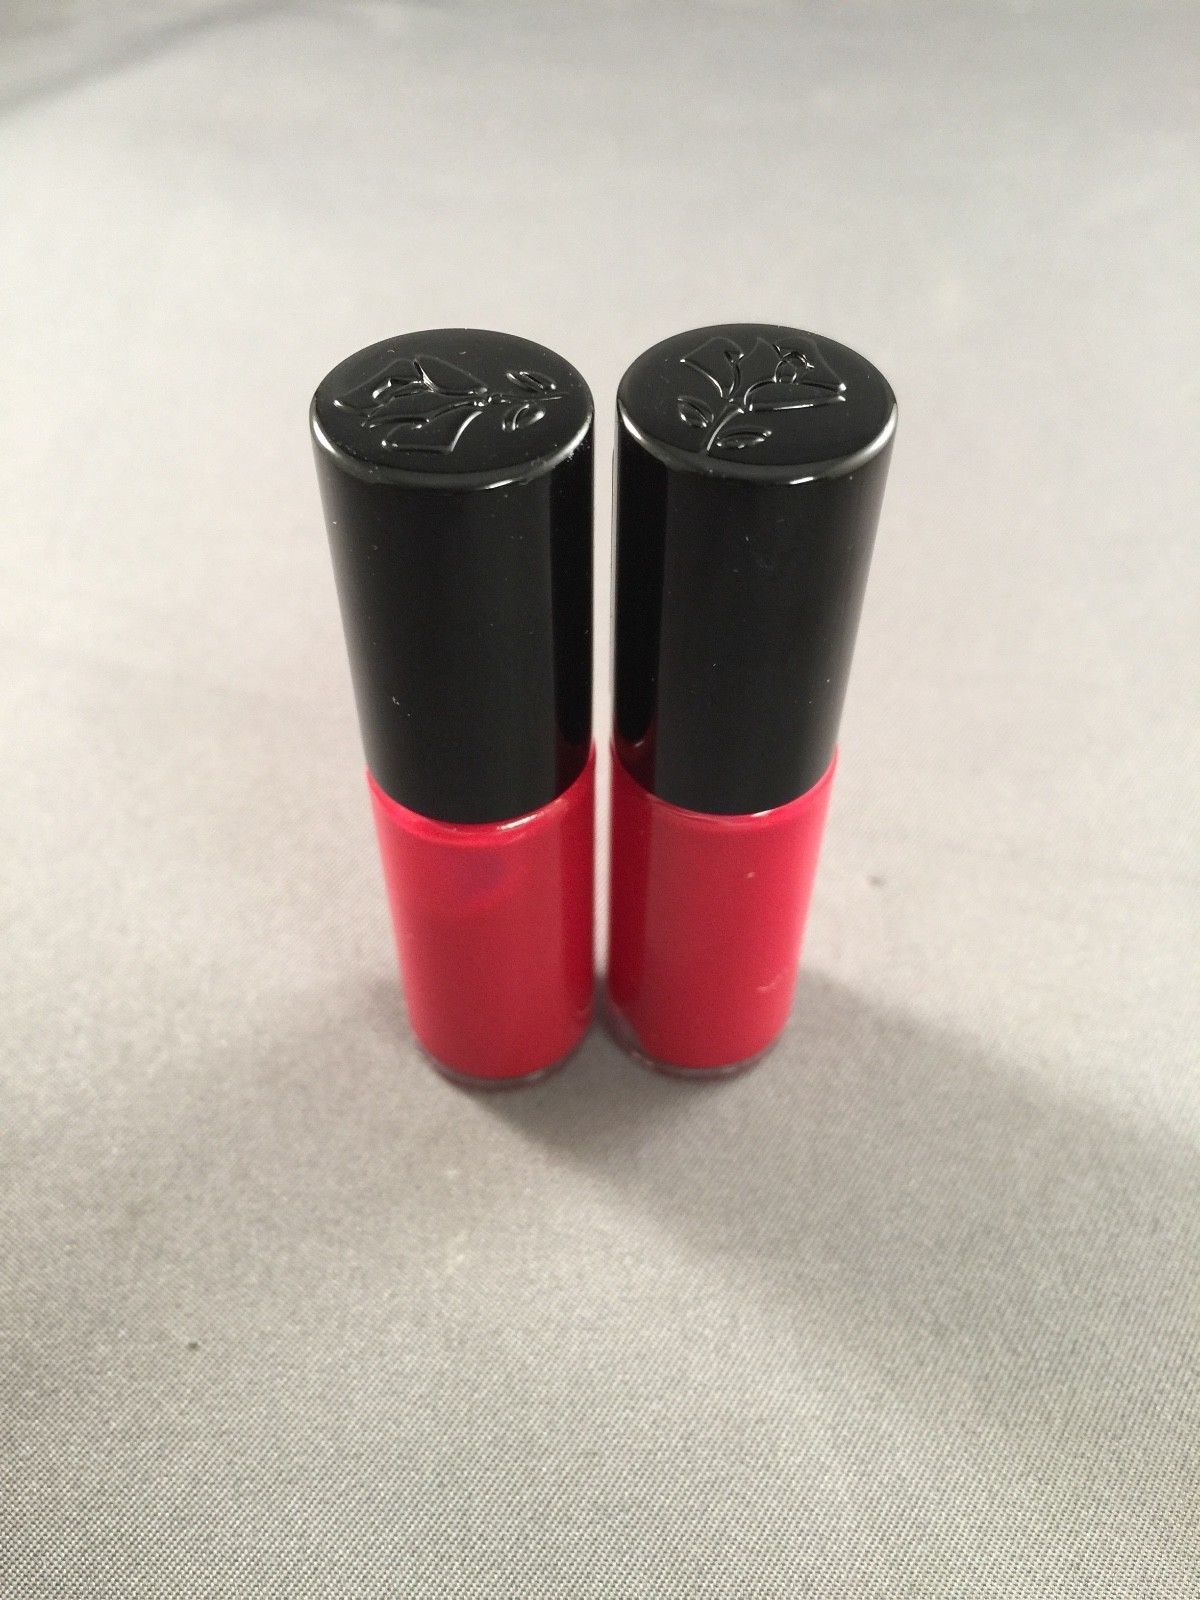 Kraan Meetbaar Gezichtsvermogen 6 x Lancome Matte Shaker Liquid Lipstick and 11 similar items